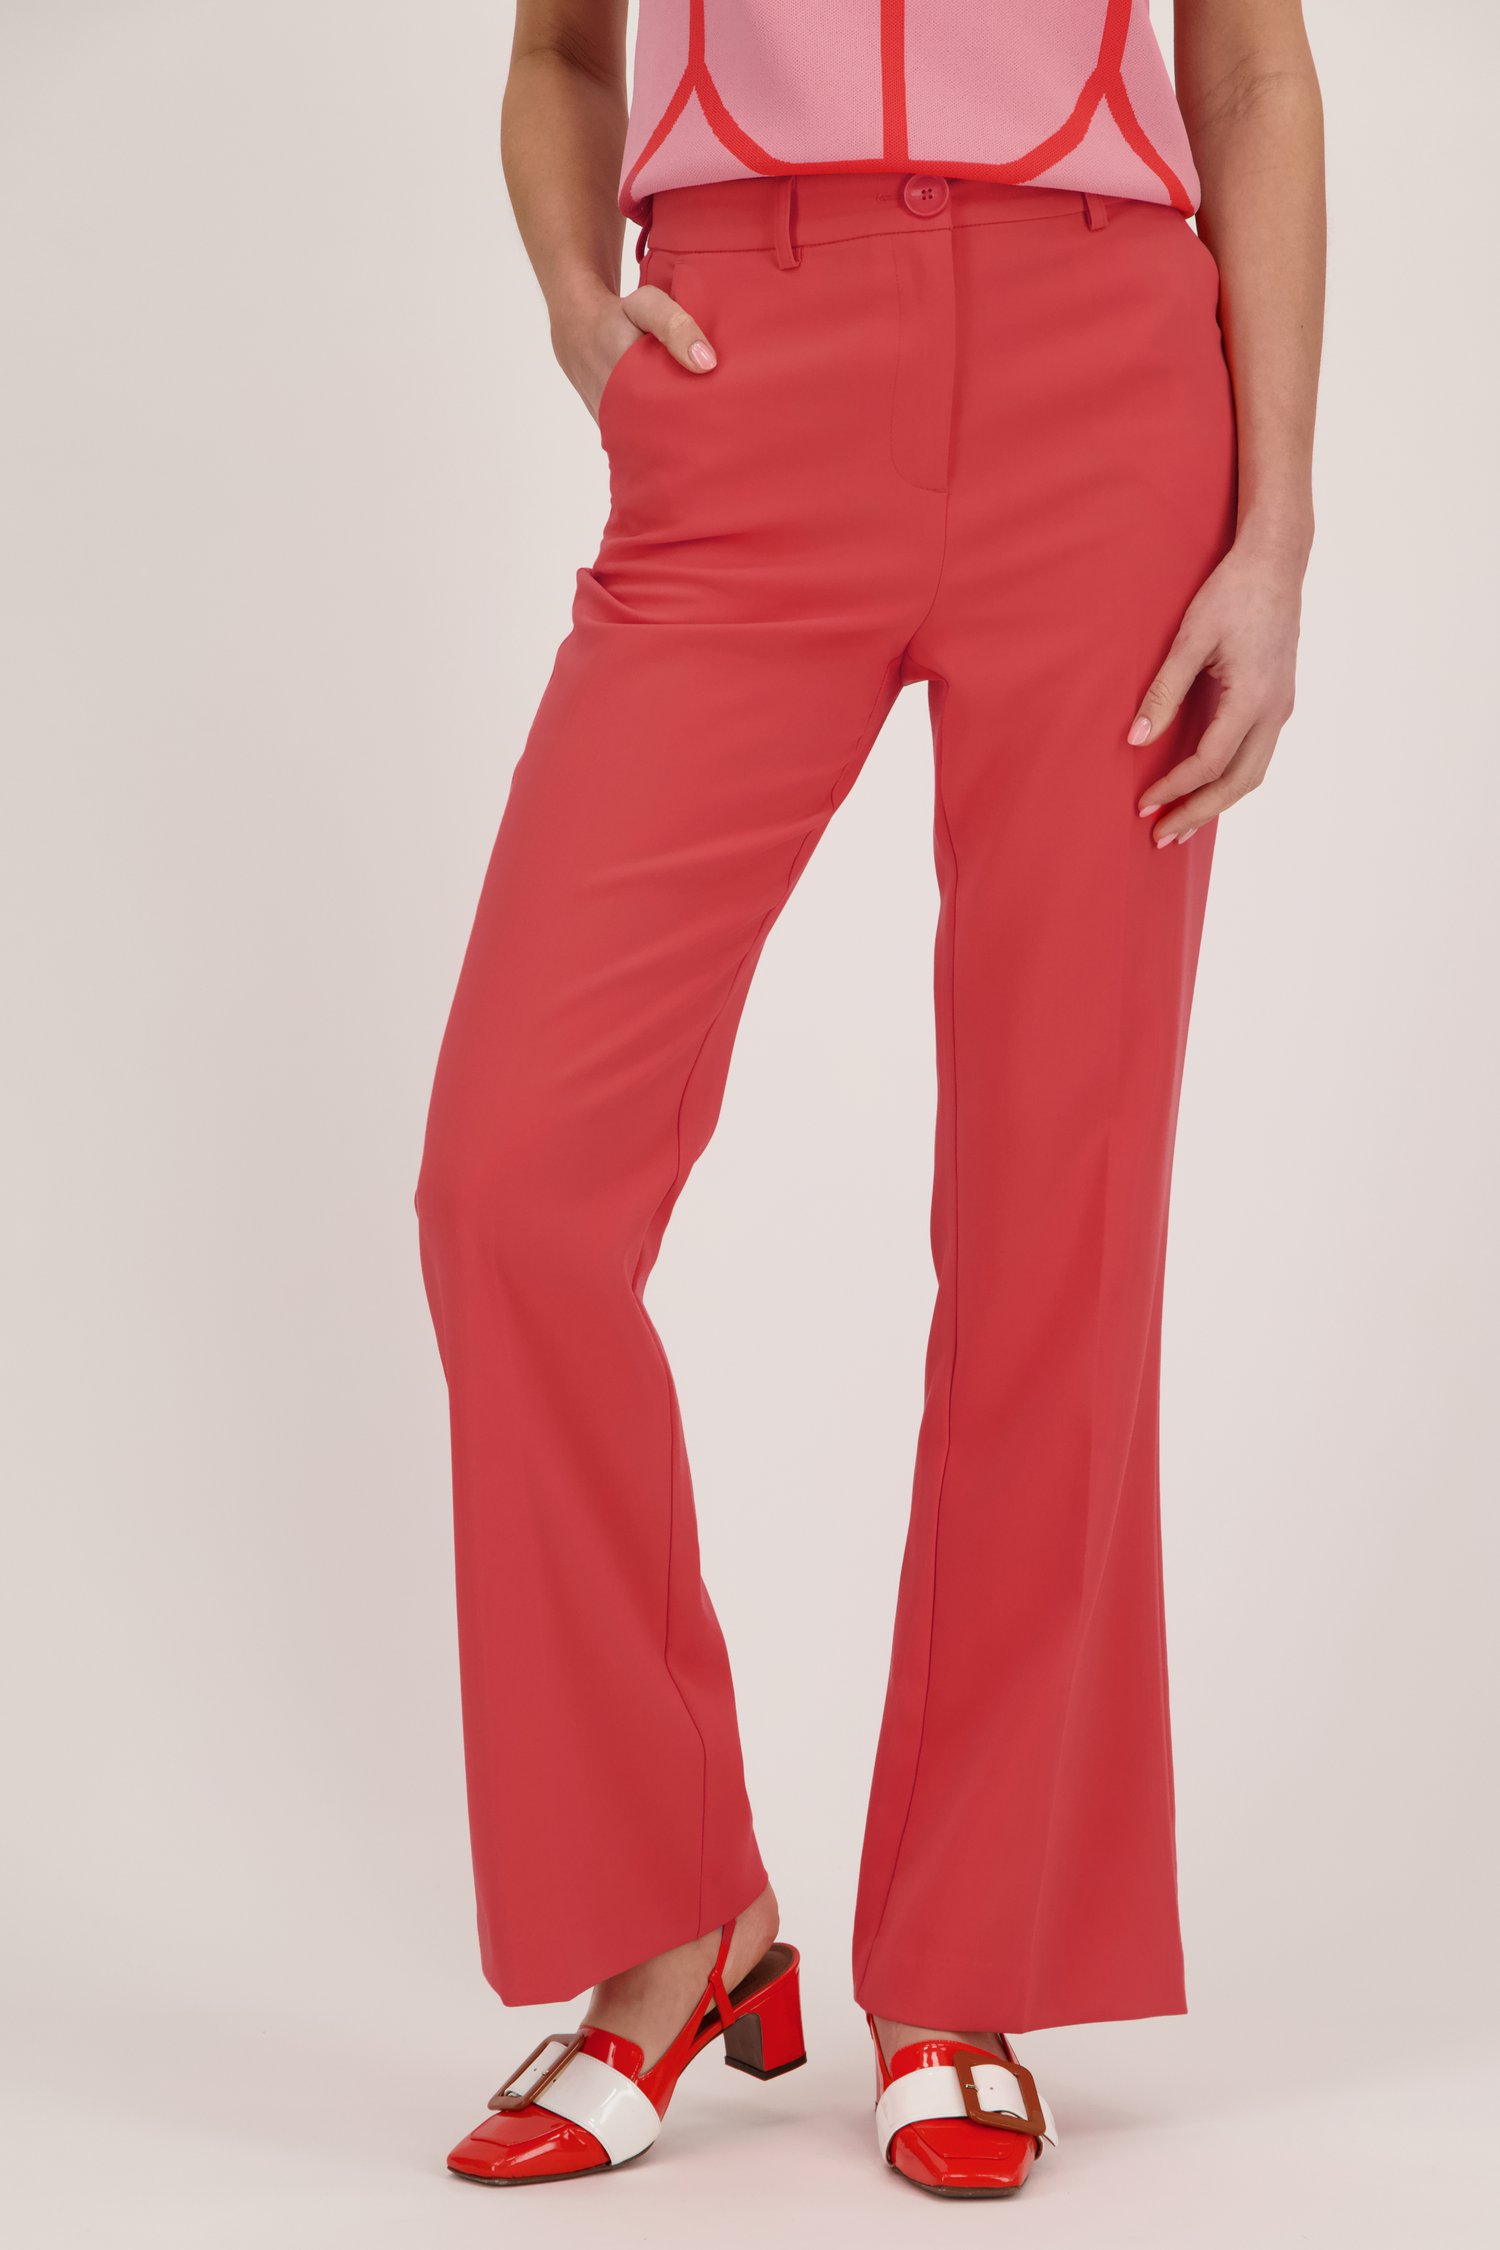 Pantalon habillé rouge corail	 de D'Auvry pour Femmes